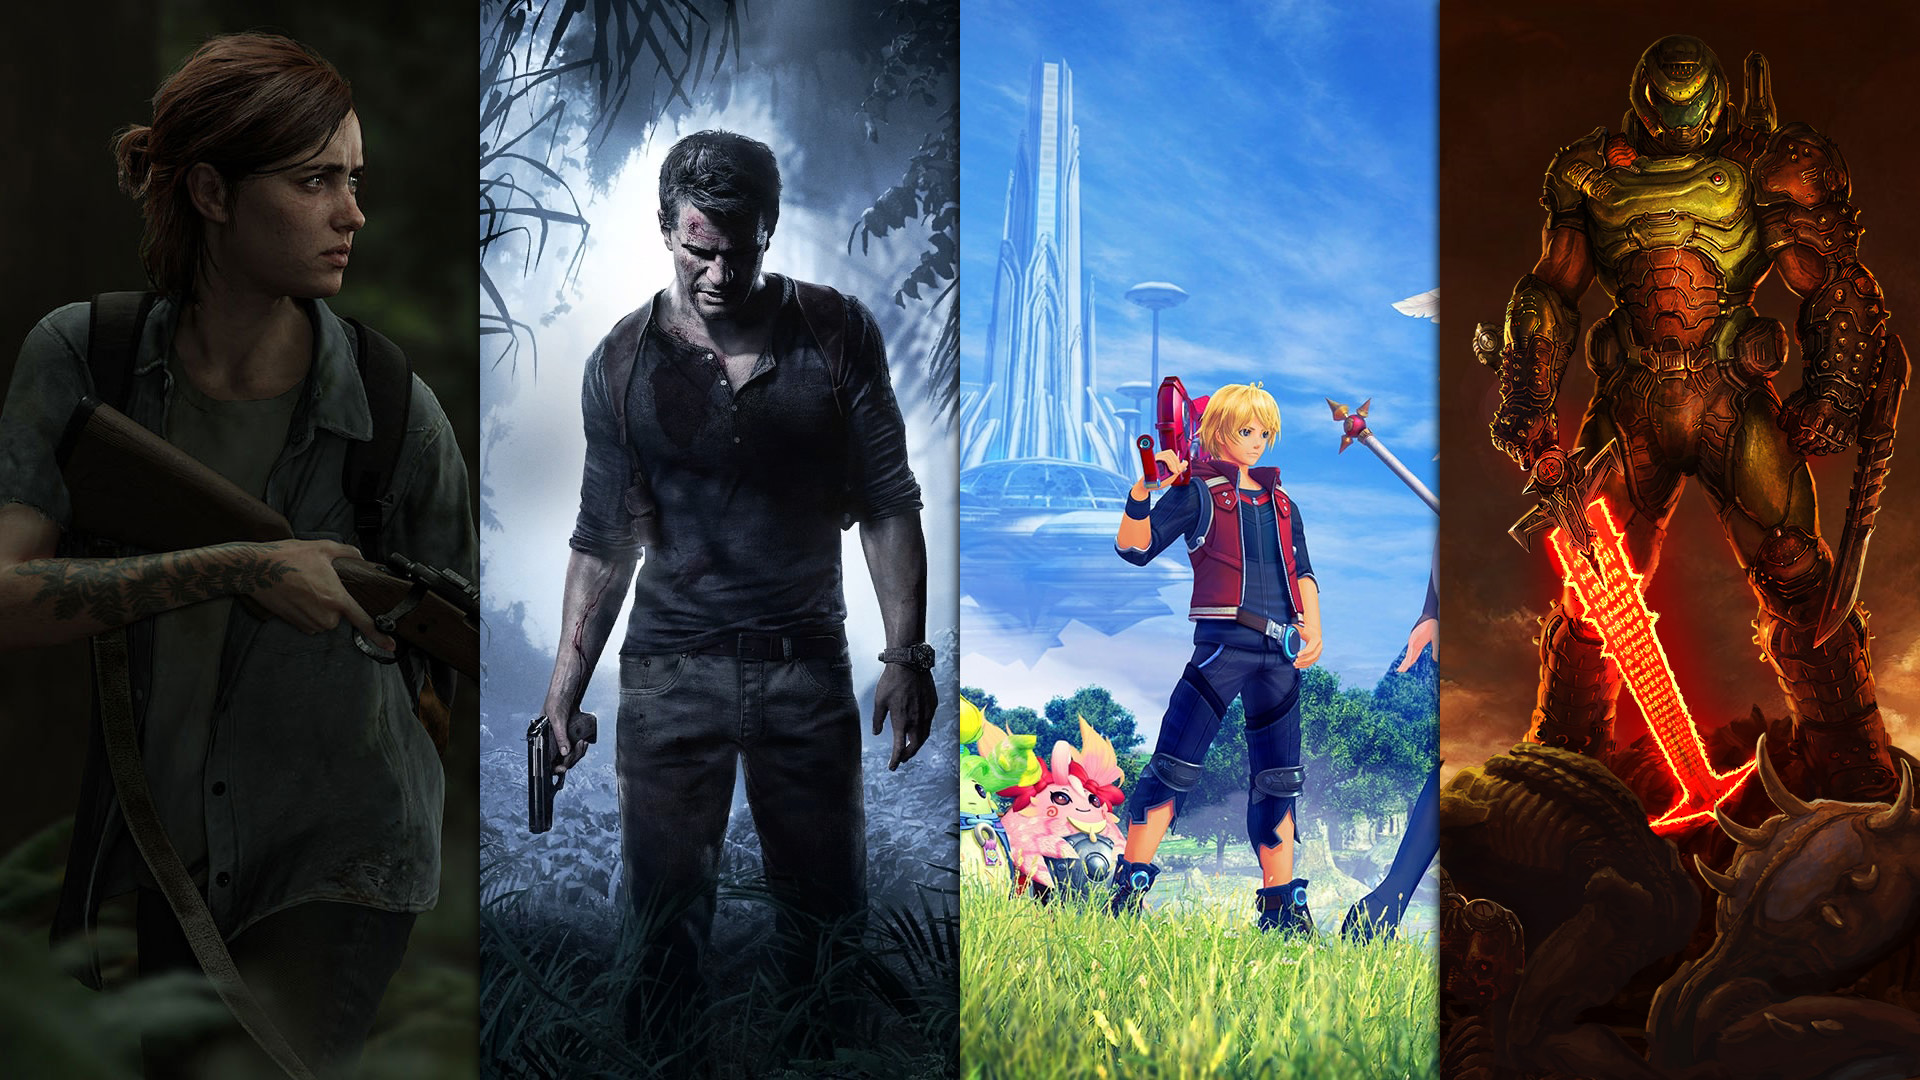 Le Meilleur de la Semaine - DOOM Eternal, The Last of Us II, PlayStation Plus, Nintendo Direct and Co.